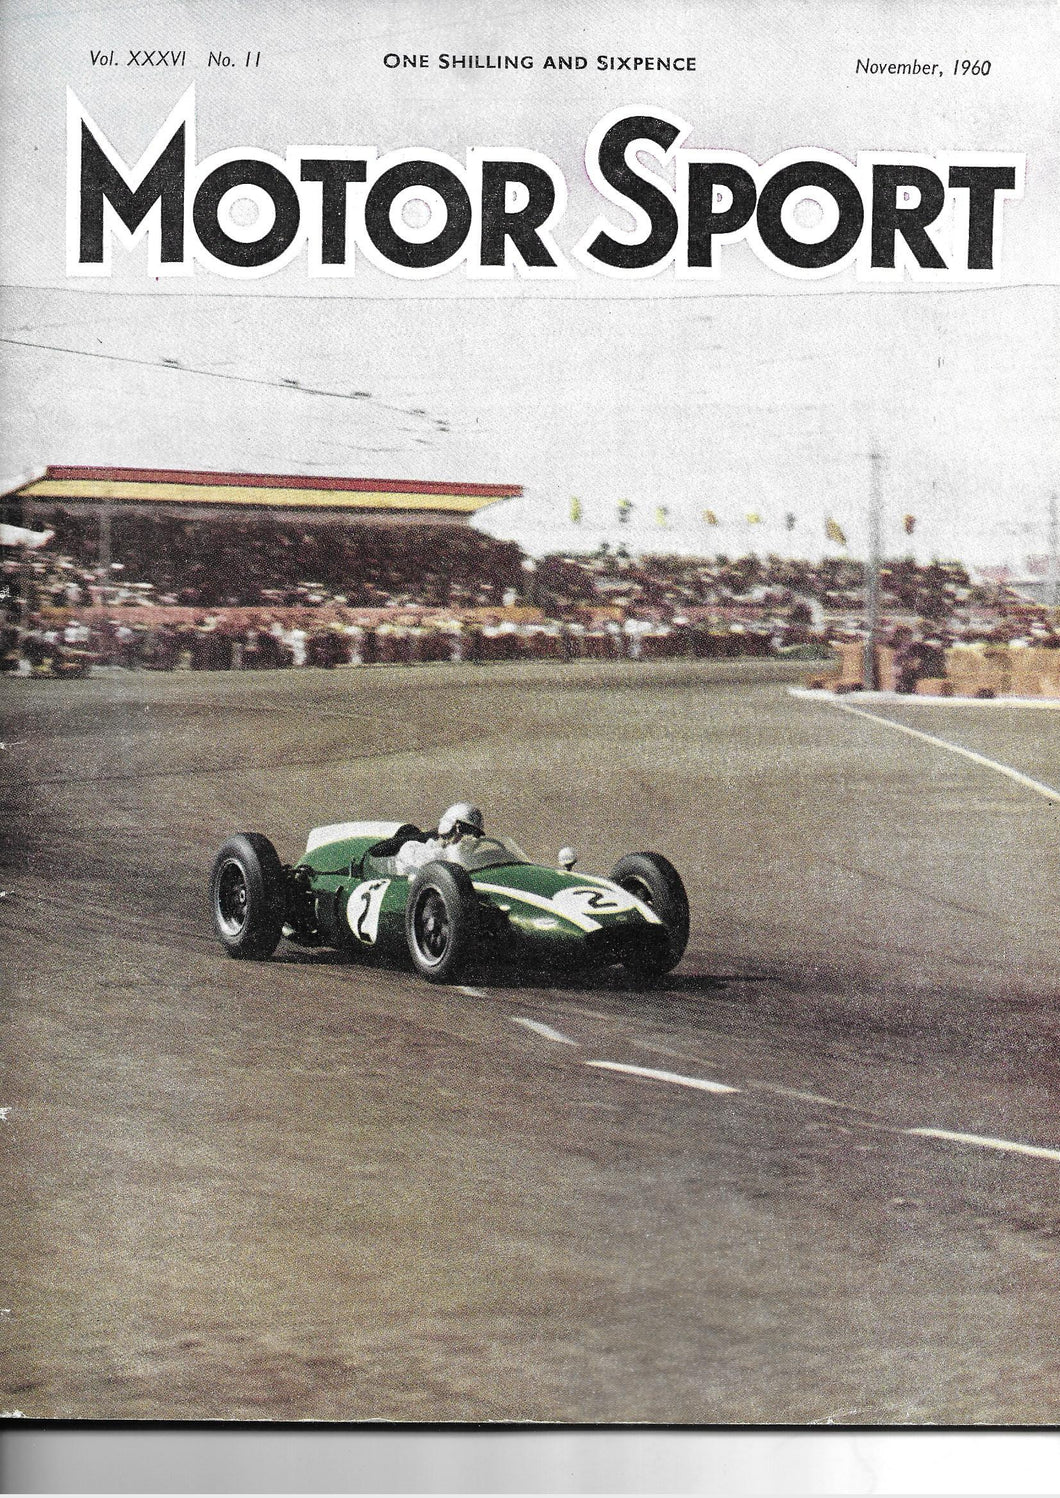 Motor Sport, Motorsport, Magazine, Vol XXXVI No.11 November 1960